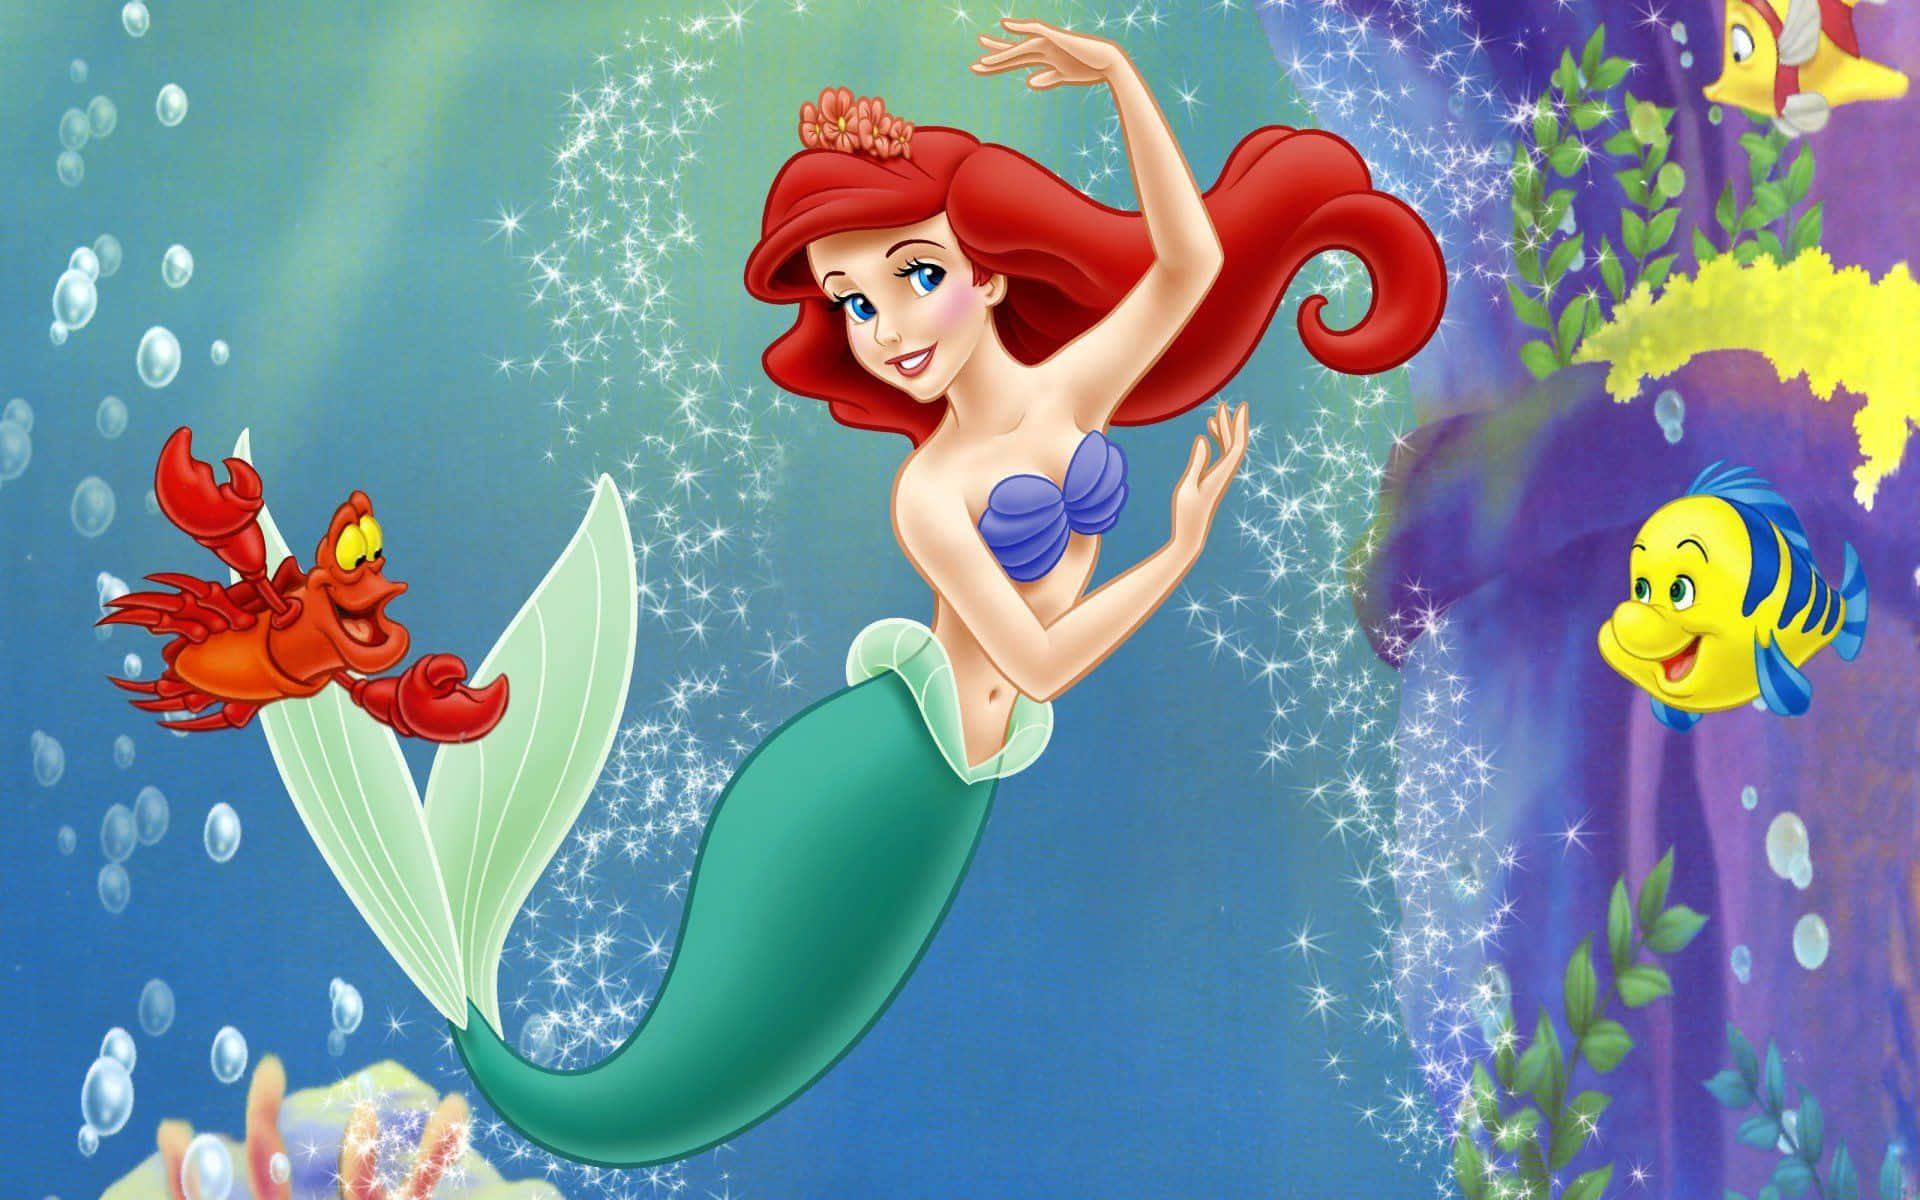 Celebrala Magia Dell'infanzia Con Il Classico Di Disney 'la Sirenetta'